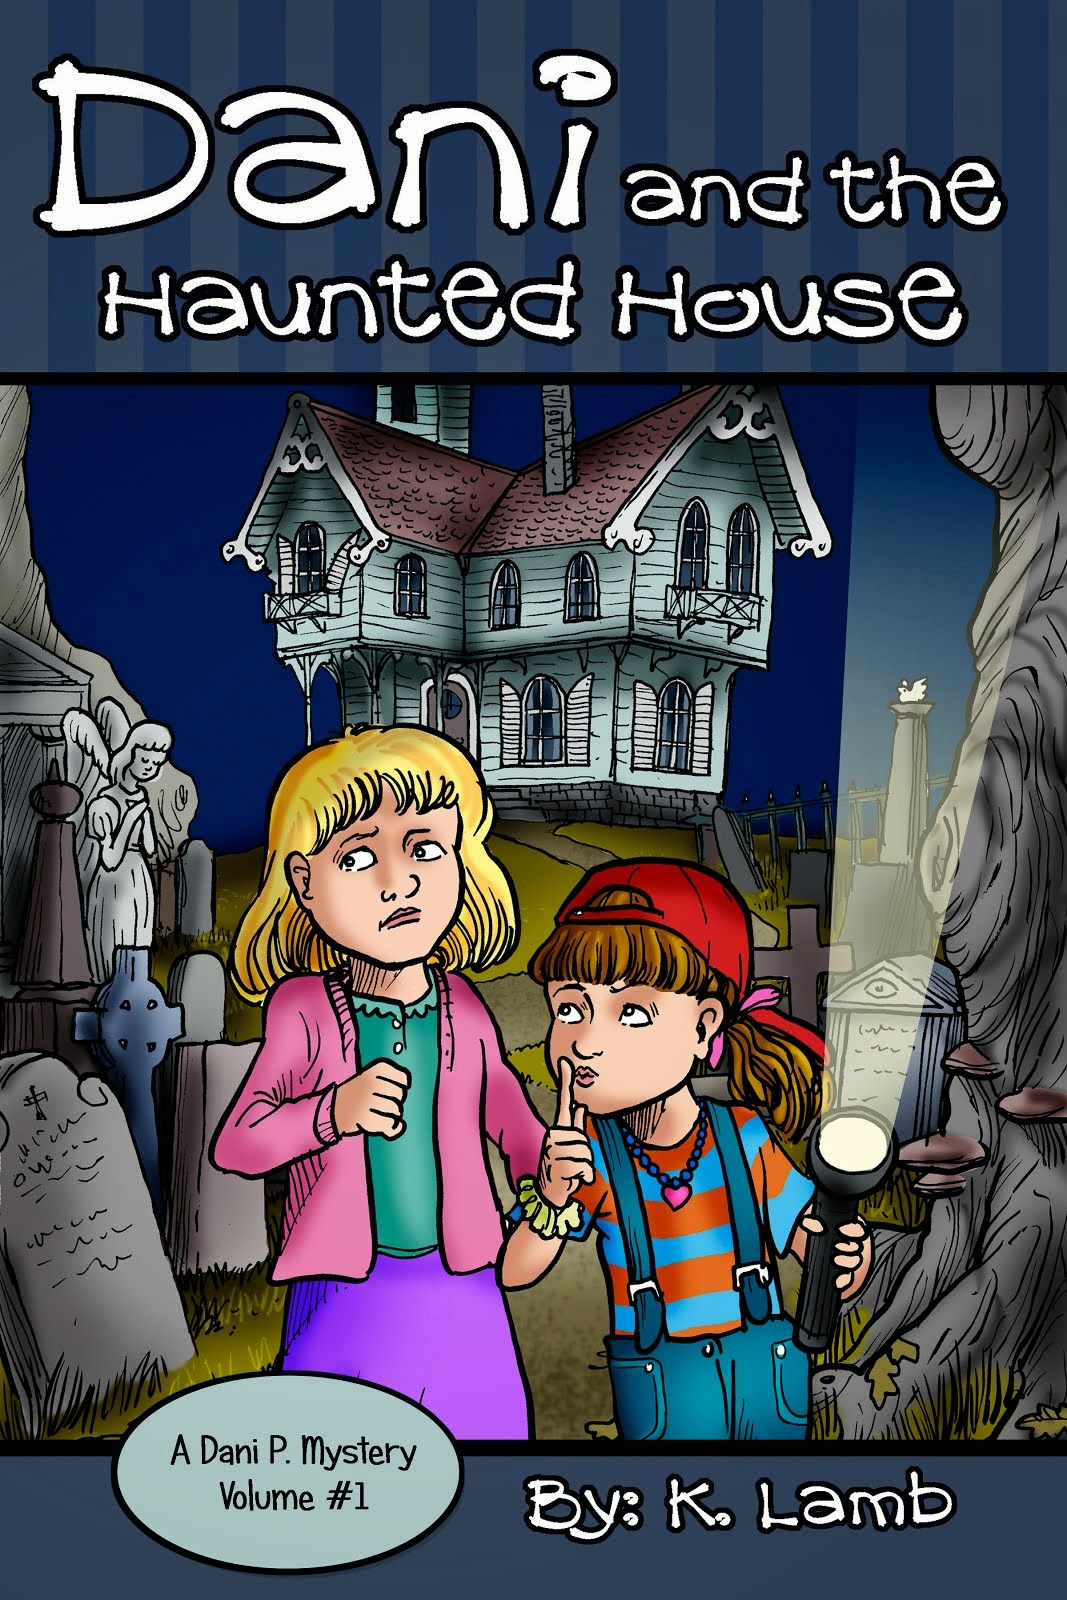 Dani and the Haunted House on Amazon